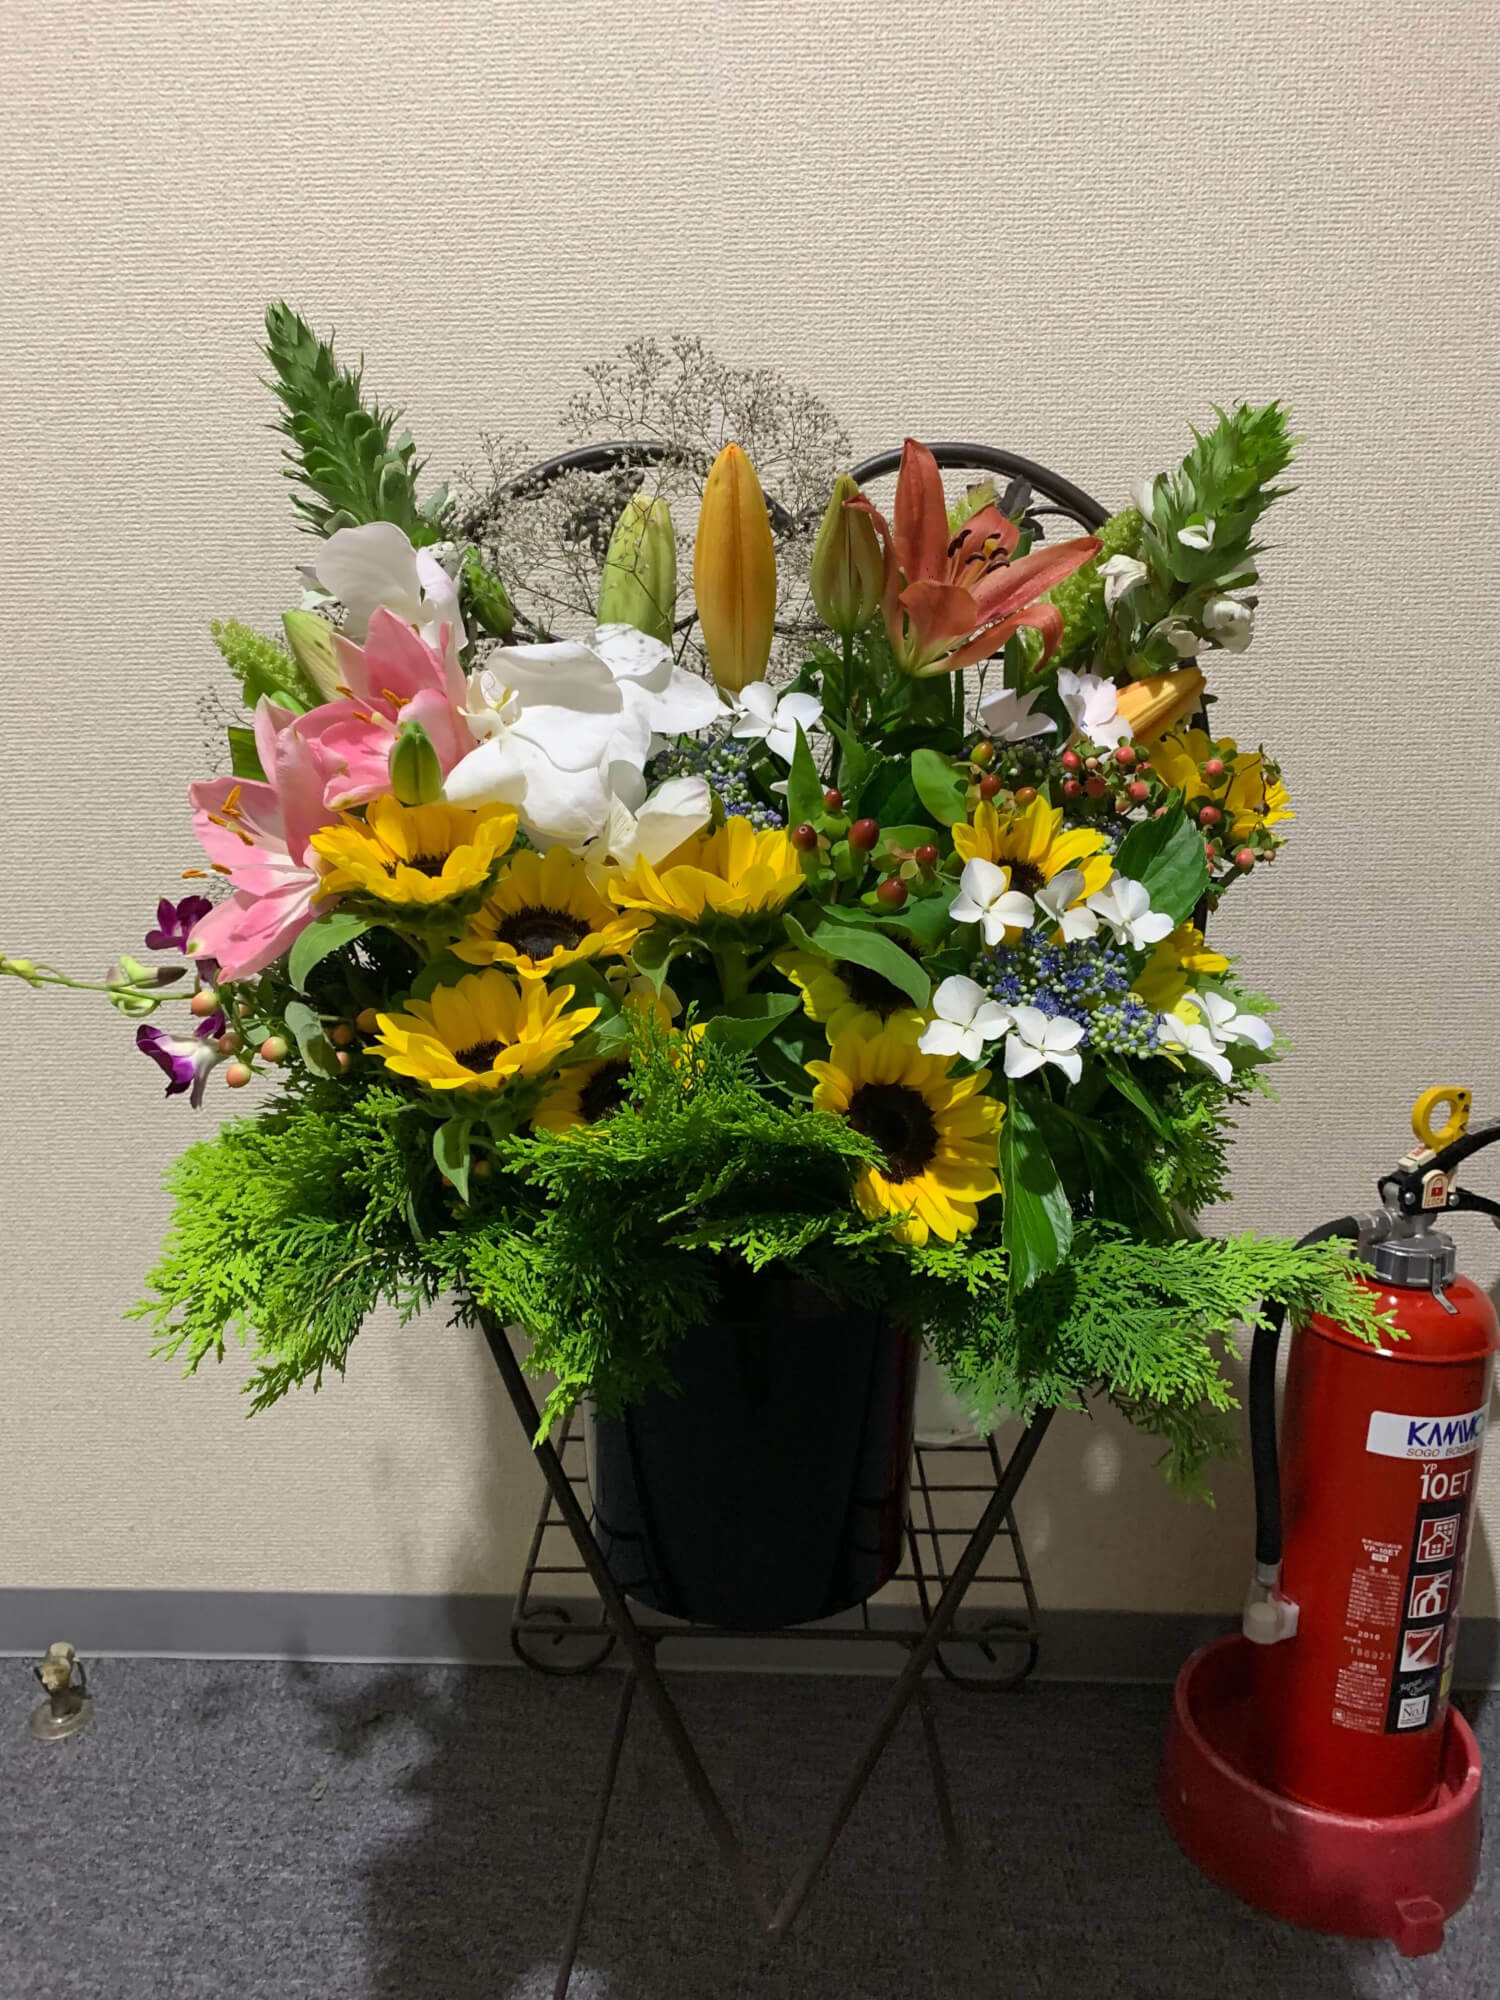 事務所内に飾ってある花